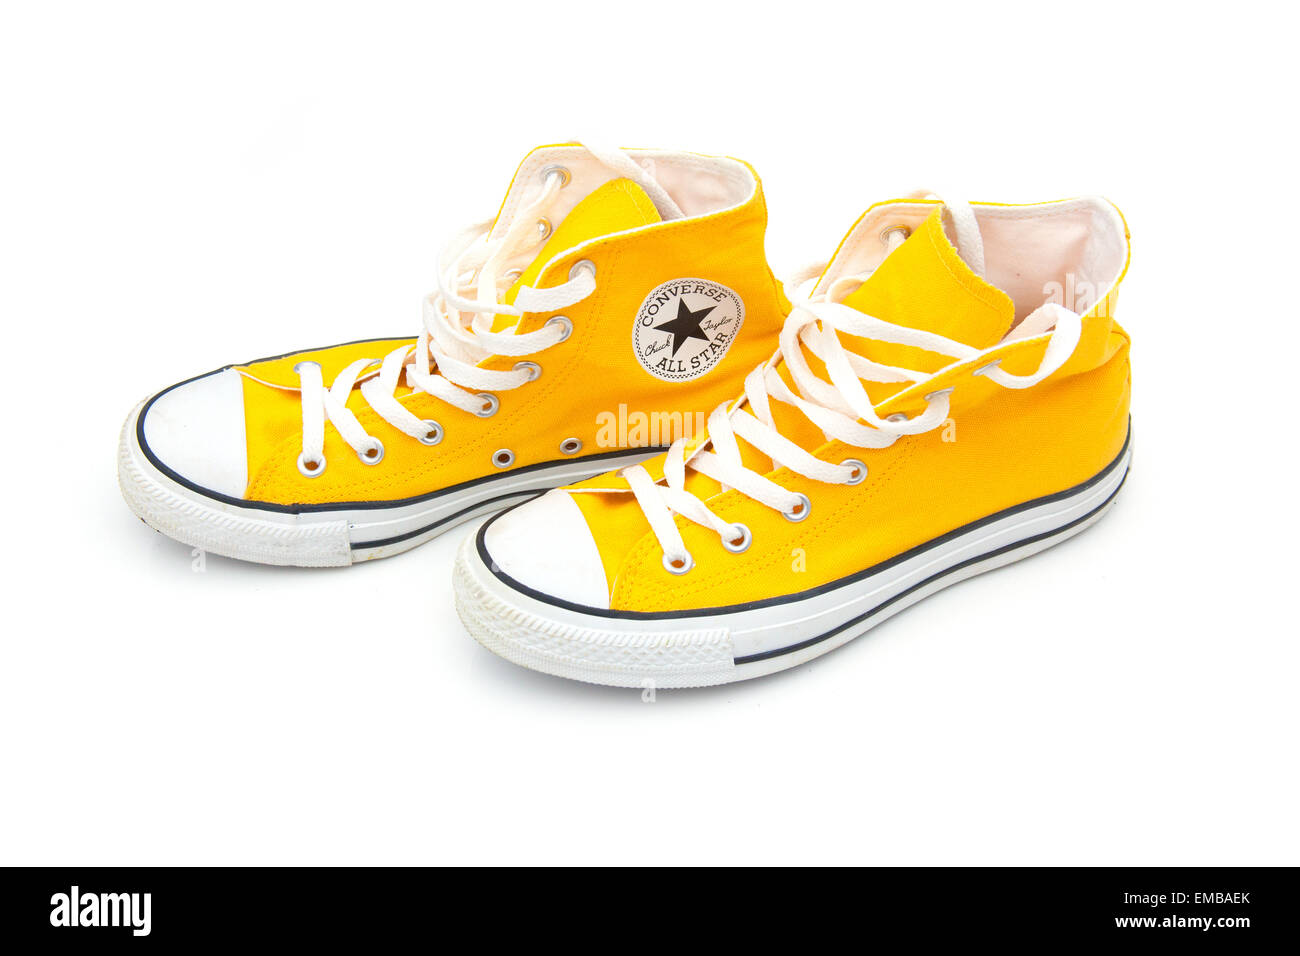 Chaussures Converse jaune isolé sur fond blanc un studio Photo Stock - Alamy